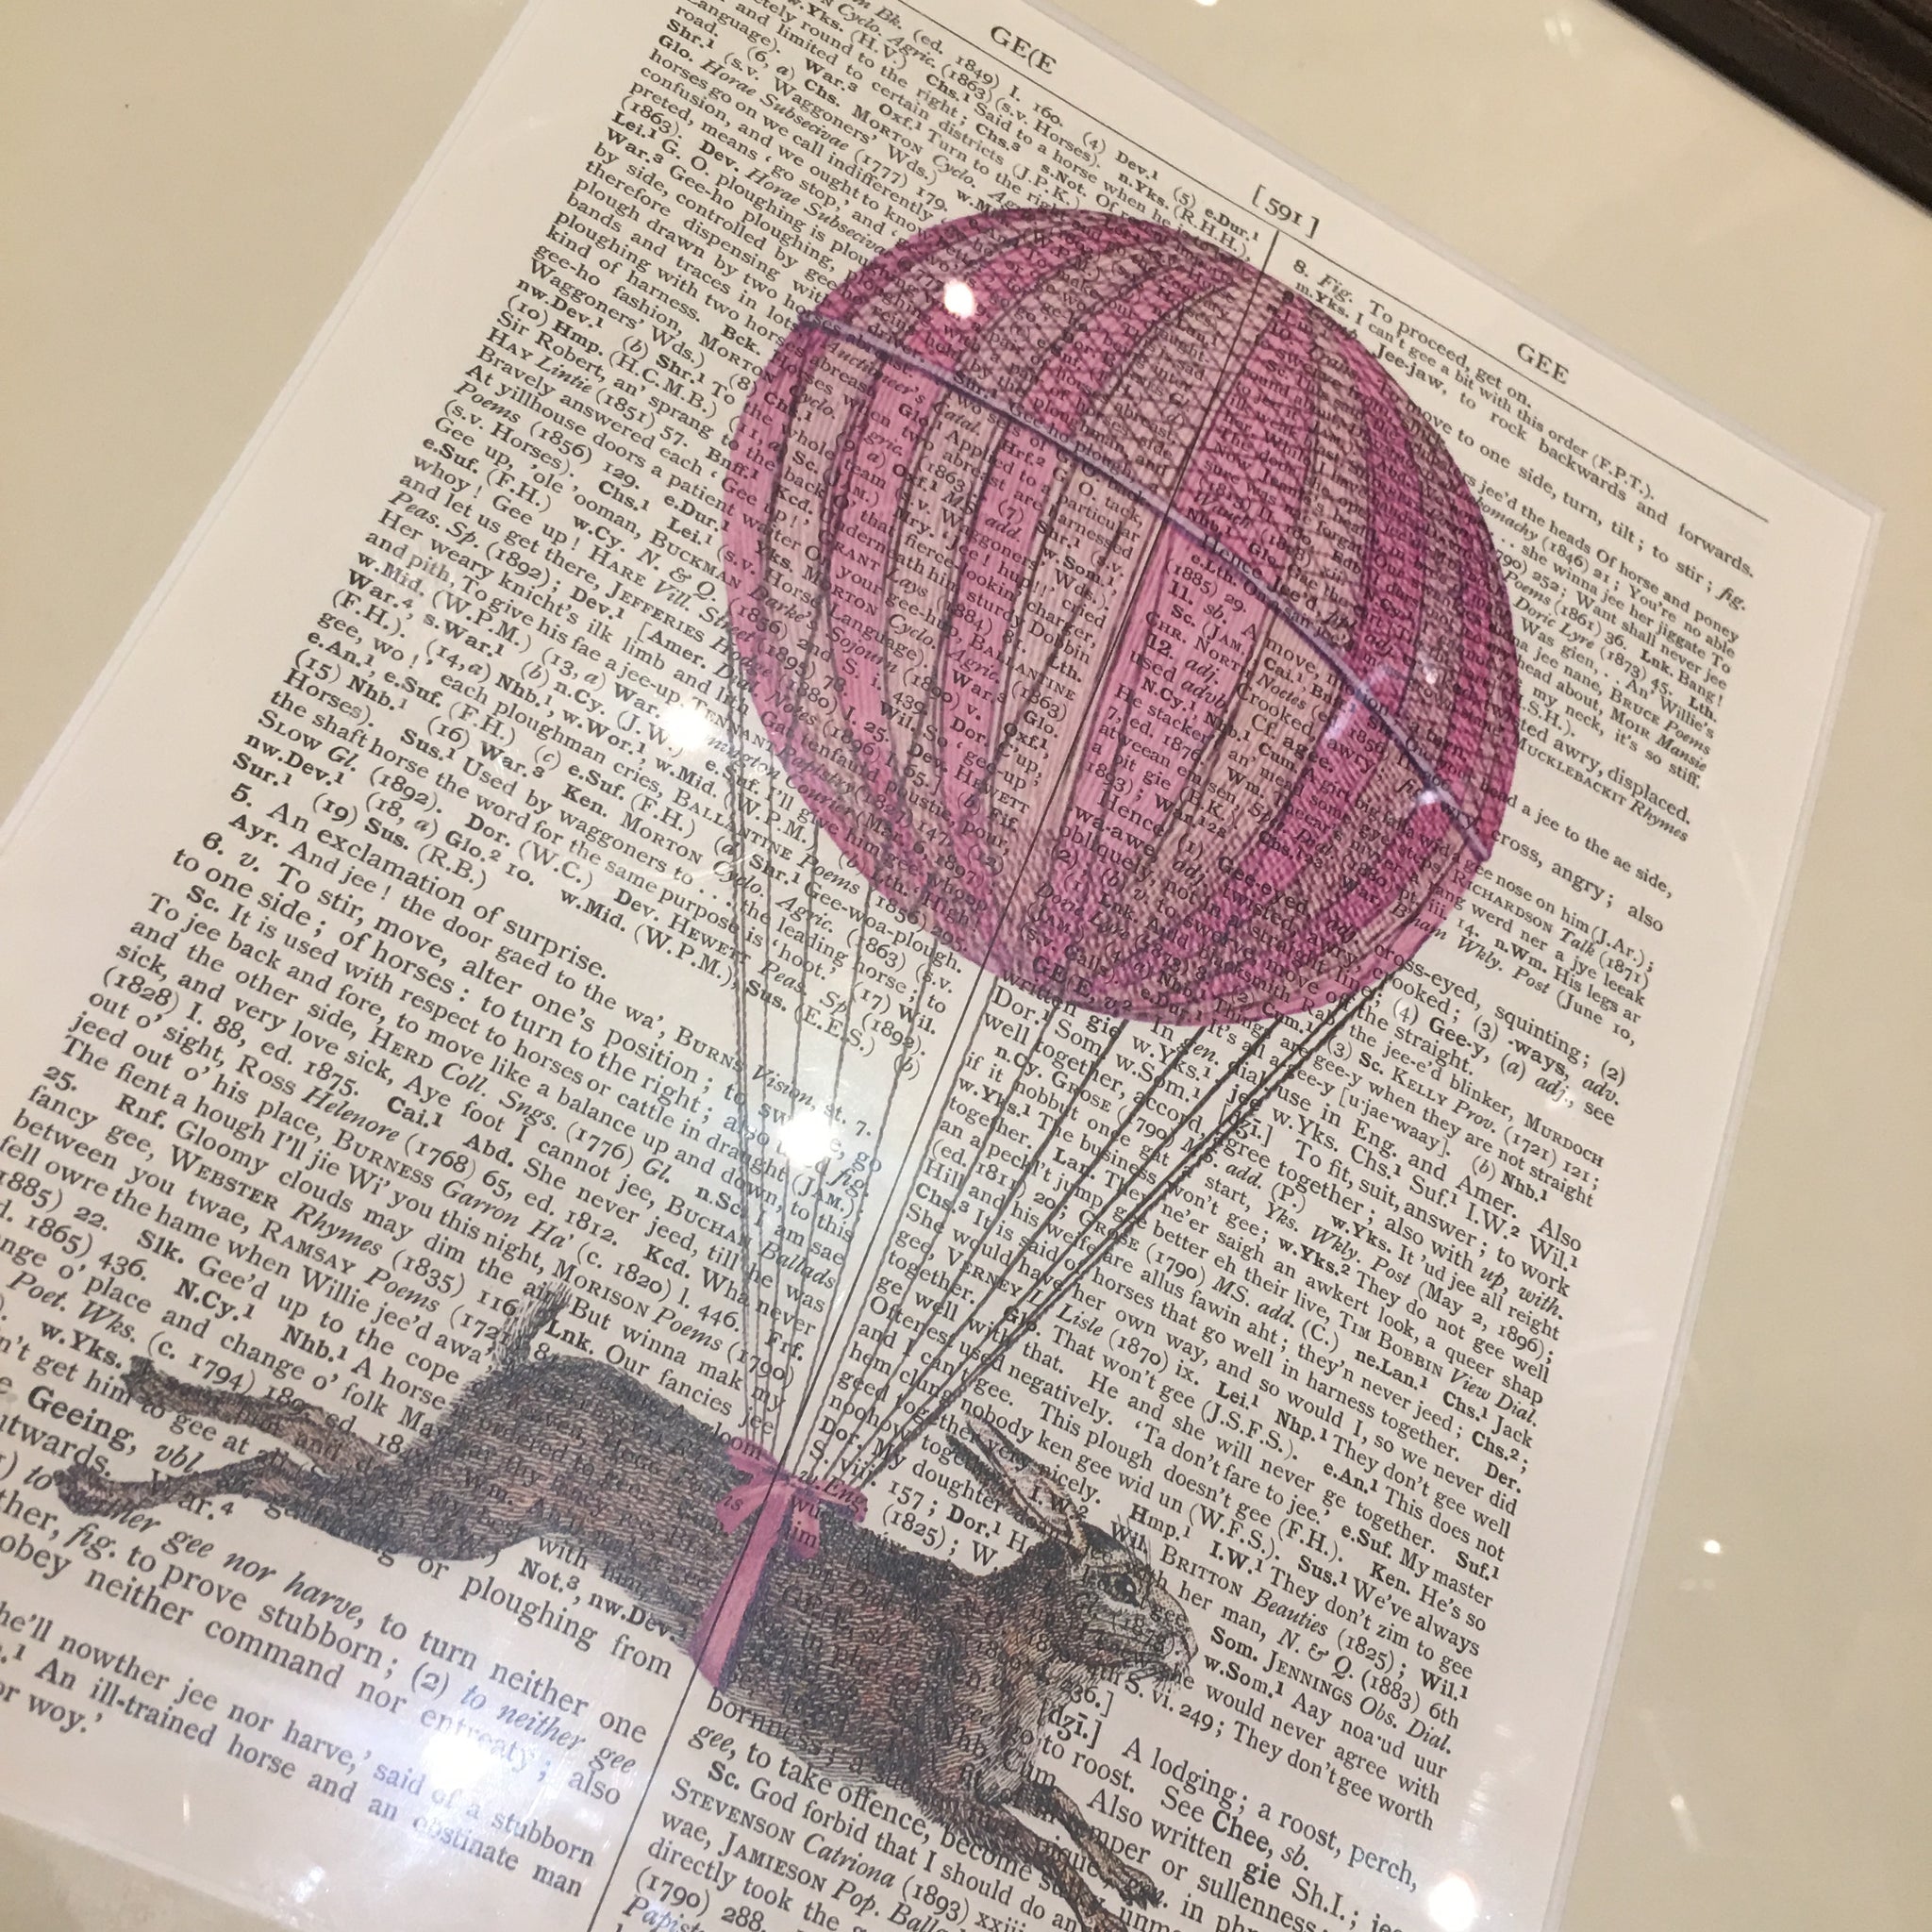 Hot Hare Ballon Framed Print